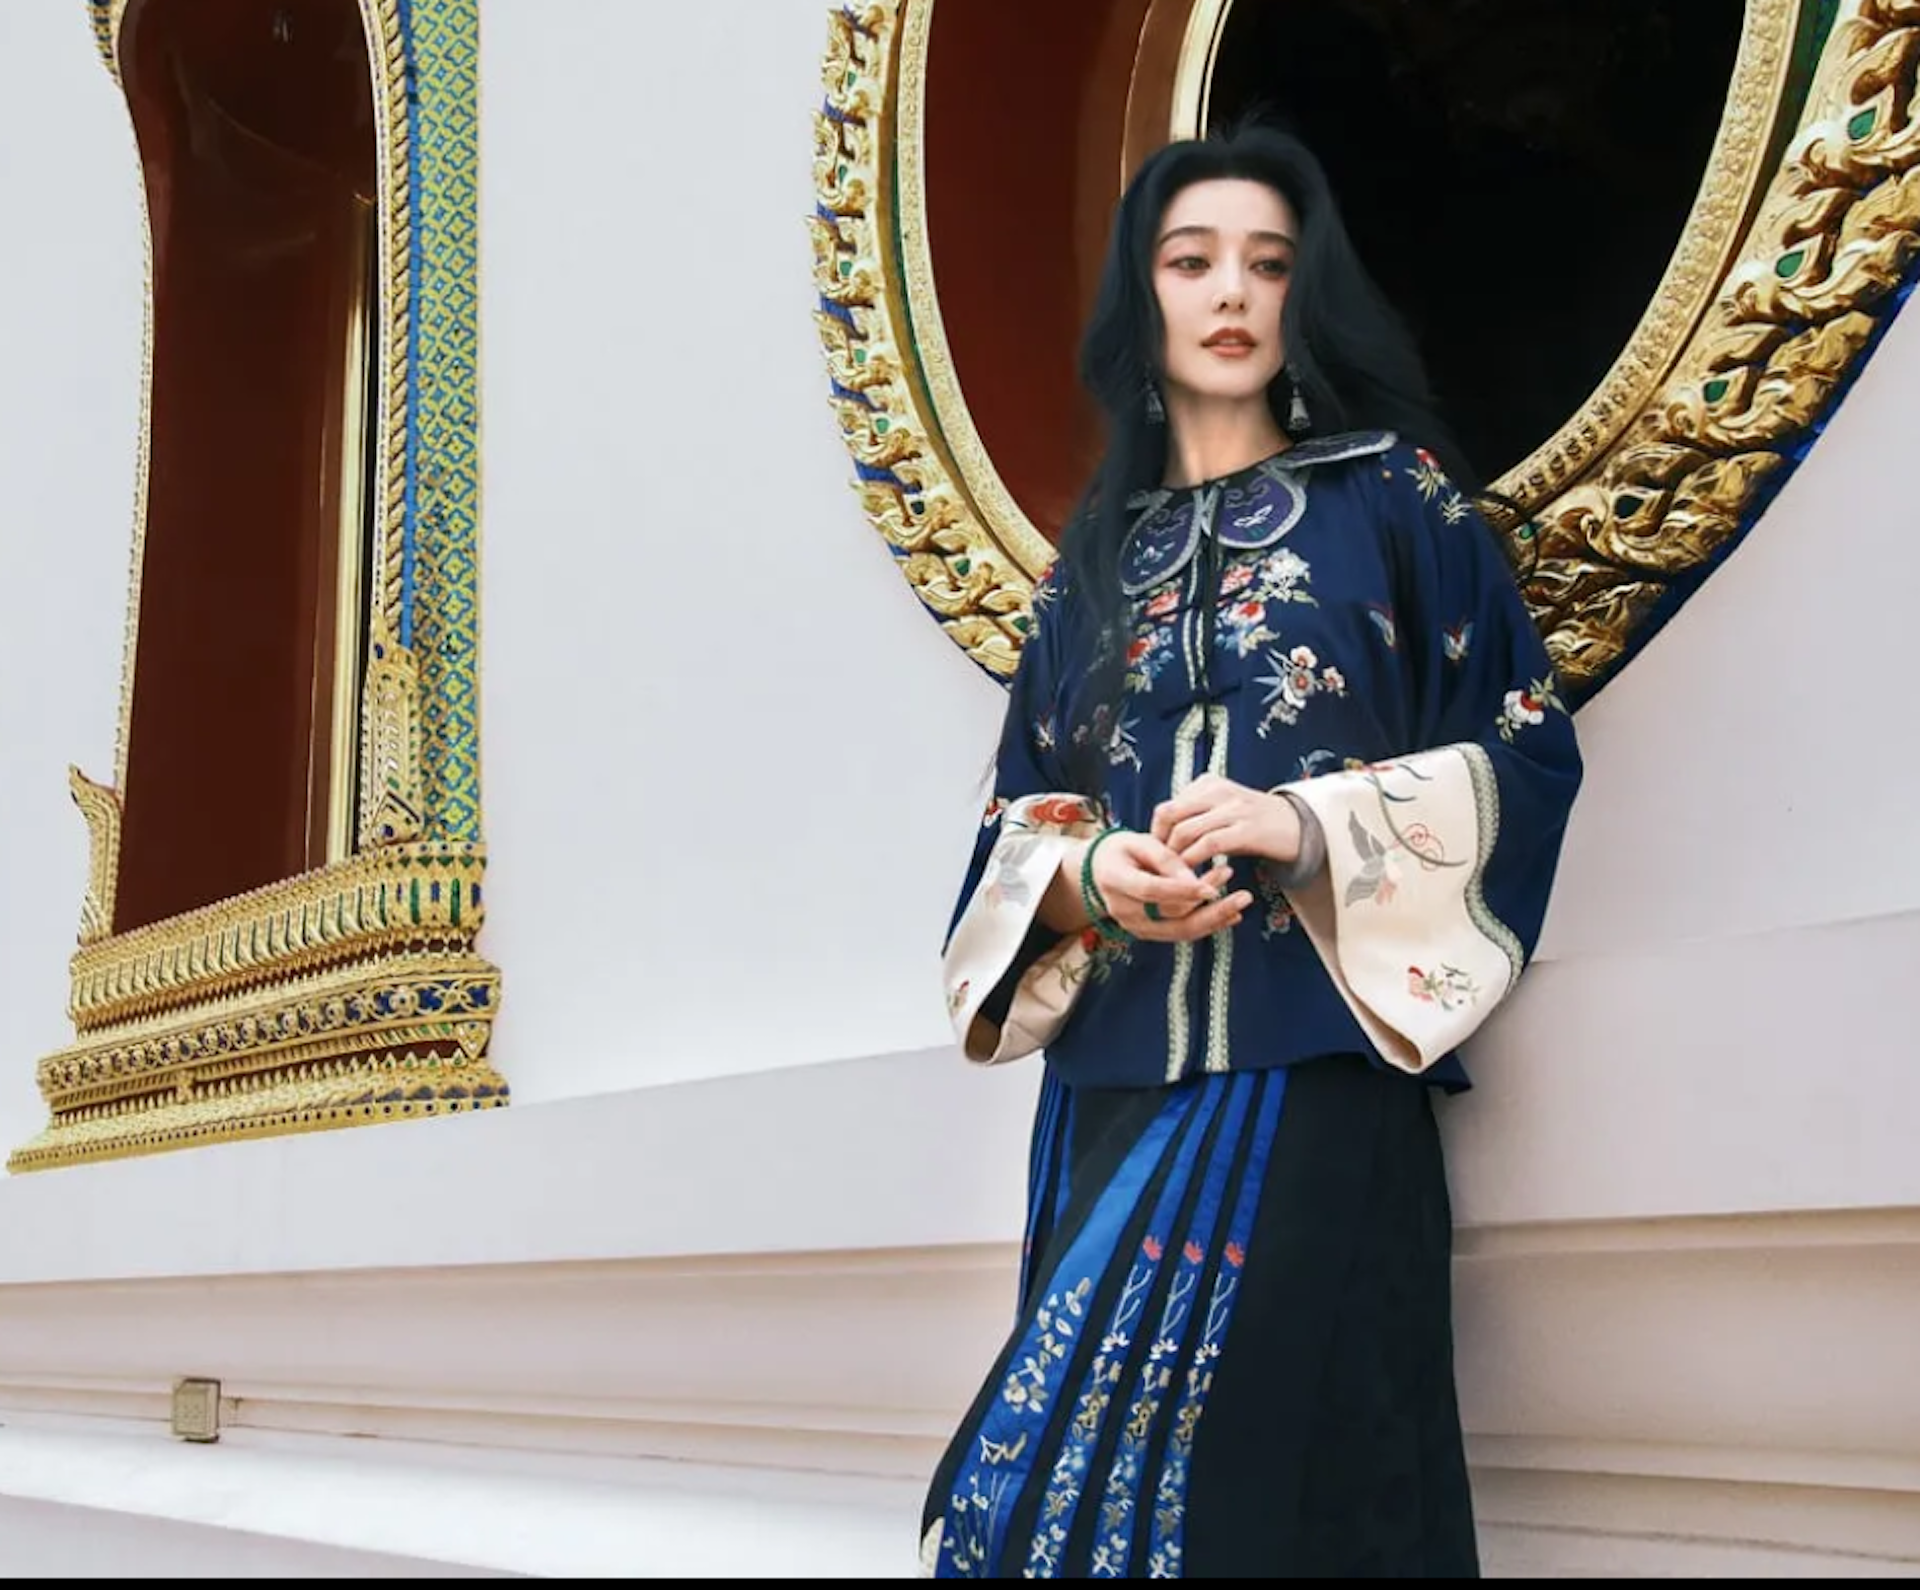 Ngoài việc tham gia lễ hội ở Bangkok, Phạm Băng Băng cũng tranh thủ thăm thú thành phố, thưởng thức đồ ăn và thực hiện bộ ảnh thời trang tại các địa điểm du lịch. Cô cũng xuất hiện trên một chương trình buổi sáng tại xứ chùa vàng.